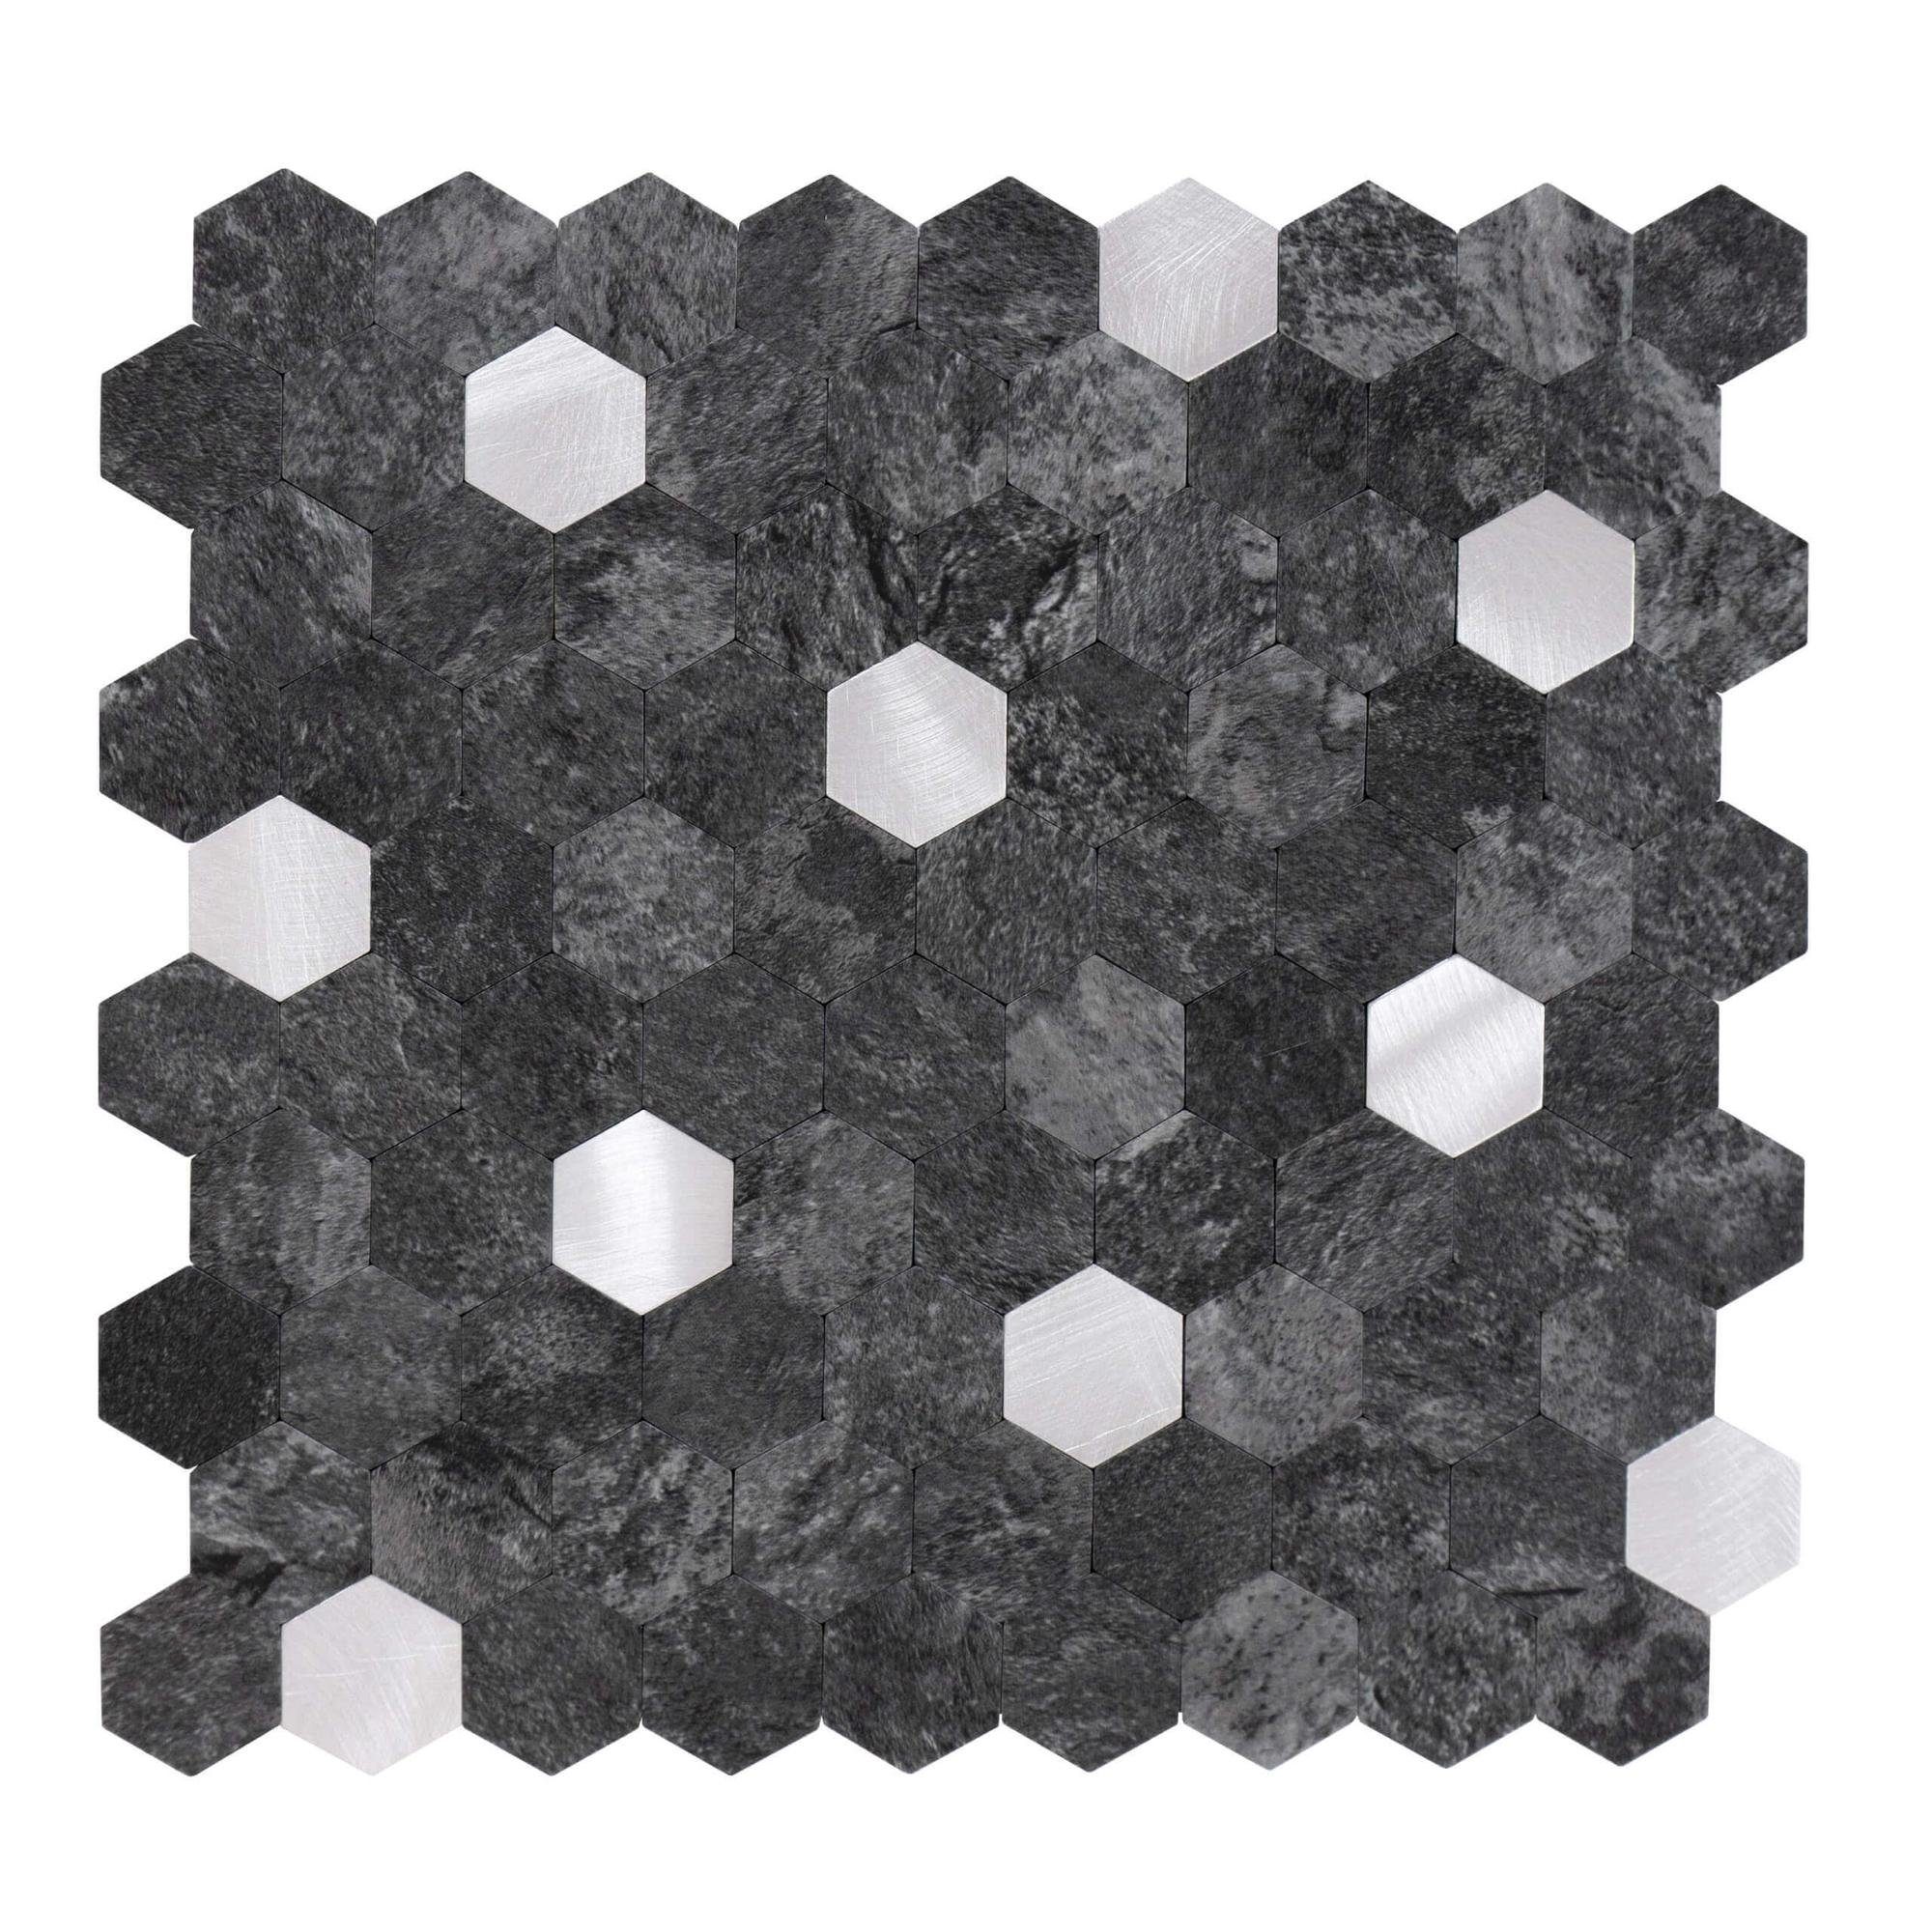 Dalsys Wandpaneel 0,88m² 11 Stück selbstklebend, (Anthrazit Silber Hexagon, 11-tlg., Wandfliese) feuchtigskeitsbeständig, einfach montiert, hochwertiges Material